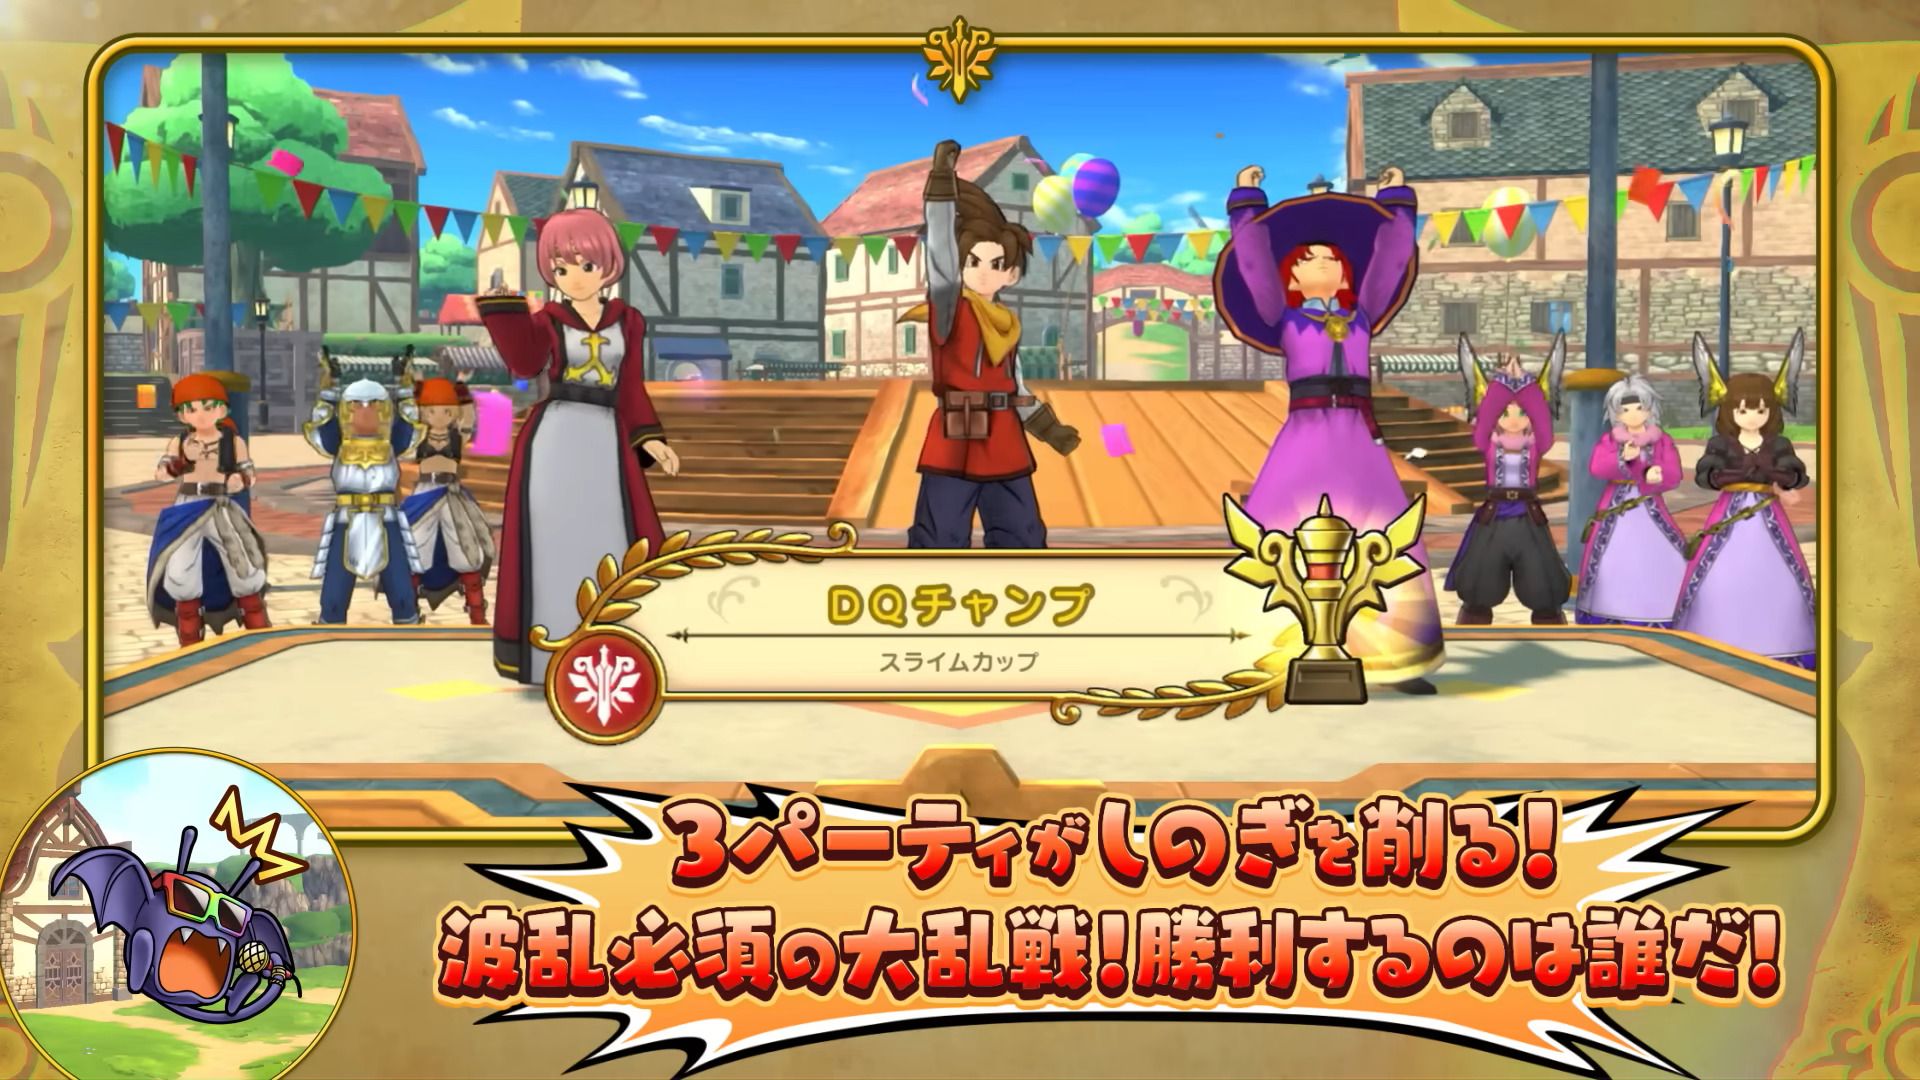 #Dragon Quest Champions: Der neue Serien-Ableger erscheint in Kürze in Japan